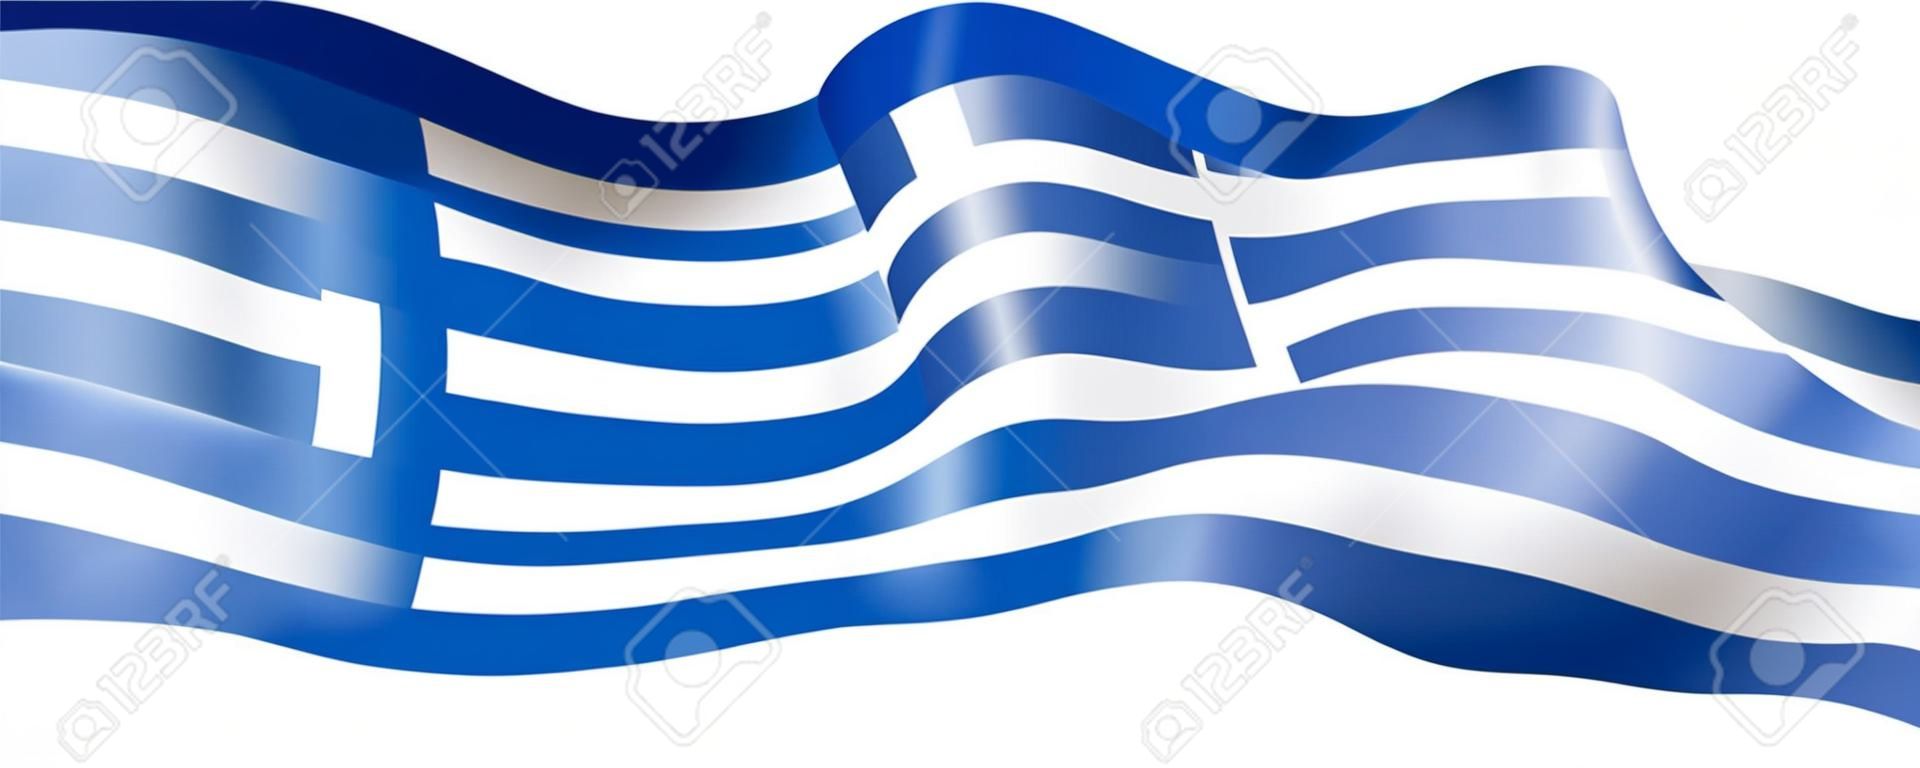 Drapeau de la Grèce, illustration vectorielle sur fond blanc